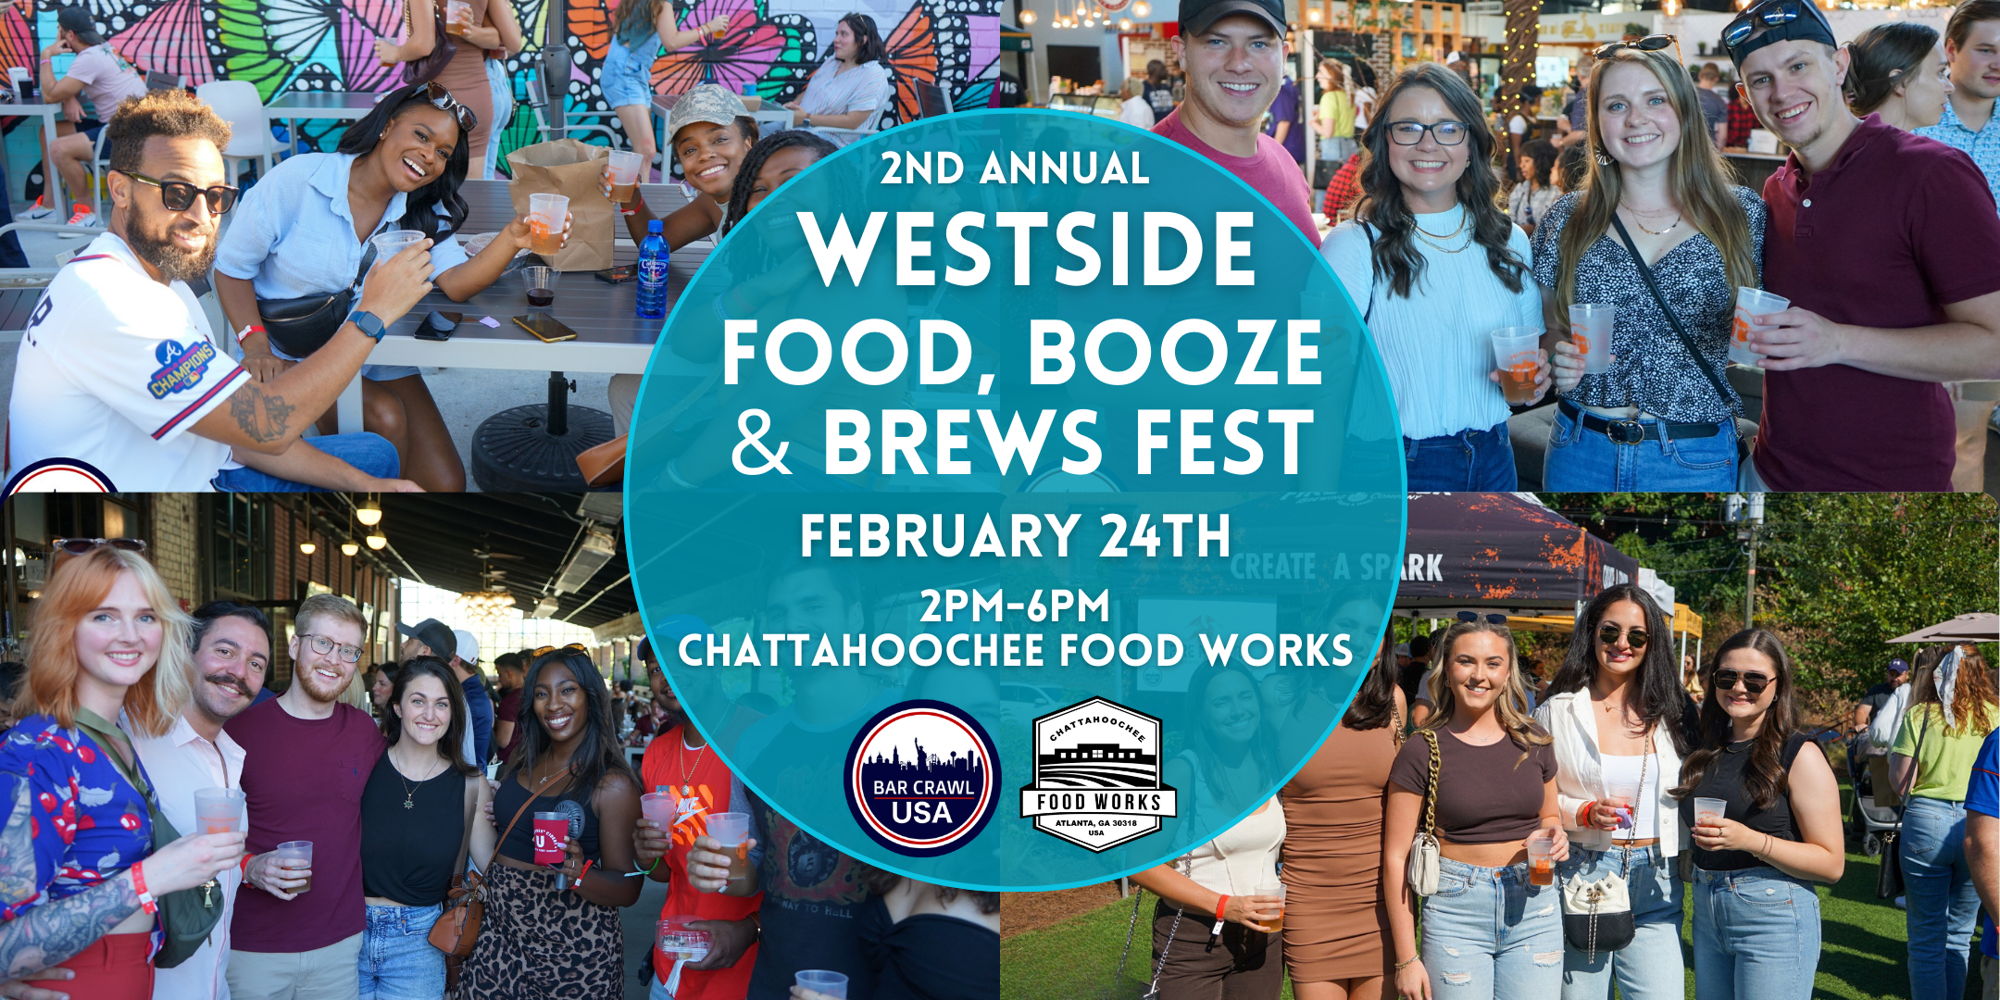 Westside Food, Booze & Brews Fest promotional image